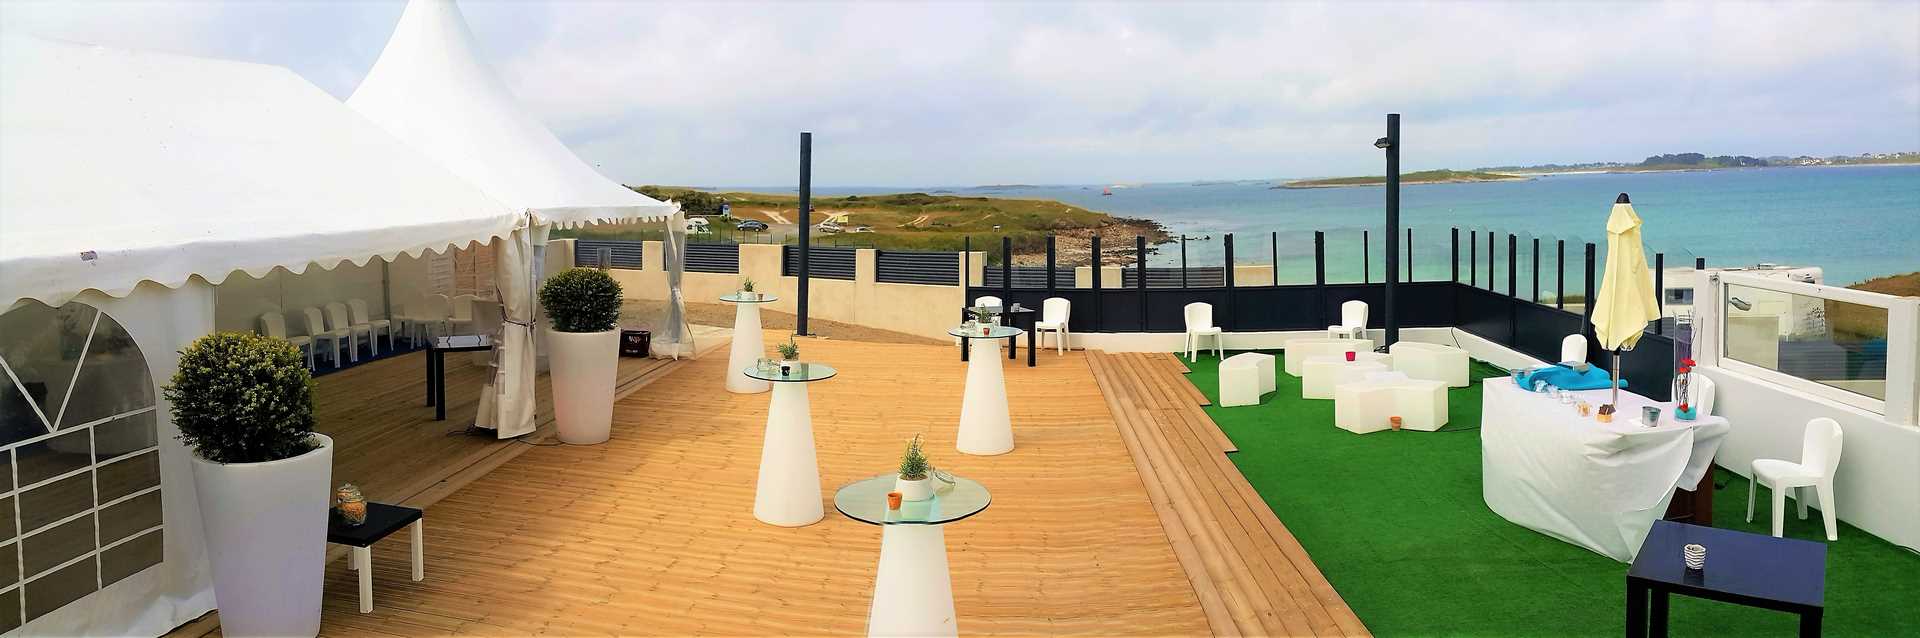 salle de mariage brest terrasse vue mer